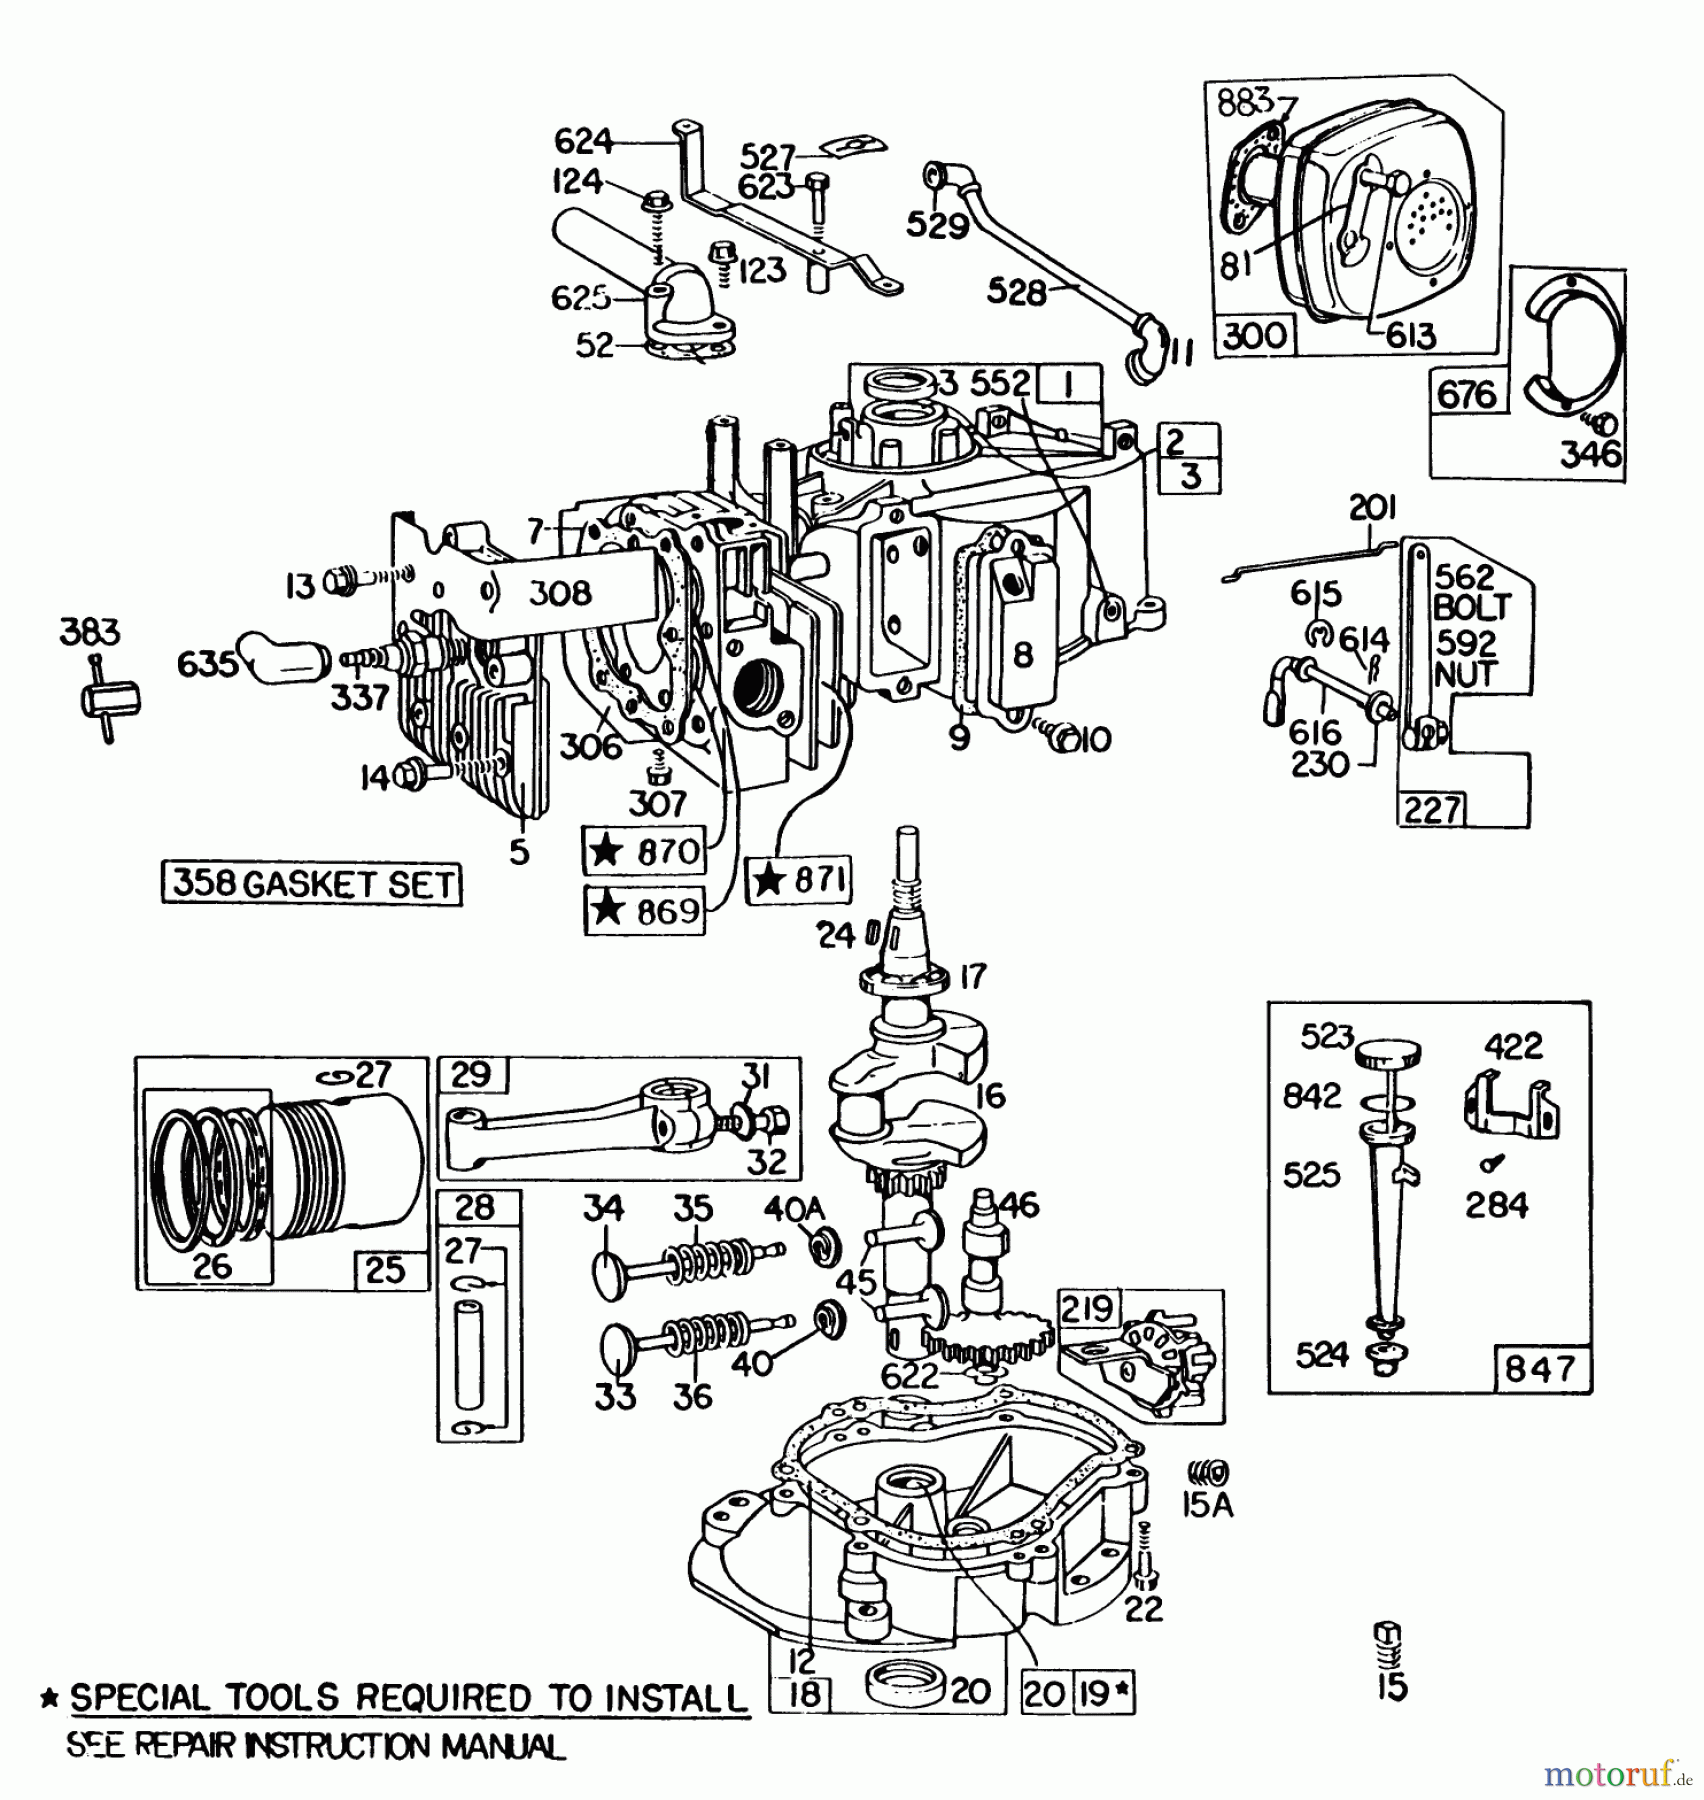  Toro Neu Mowers, Walk-Behind Seite 2 22020 - Toro Lawnmower, 1985 (5000001-5999999) ENGINE BRIGGS & STRATTON MODEL 131922-0163-01 #2